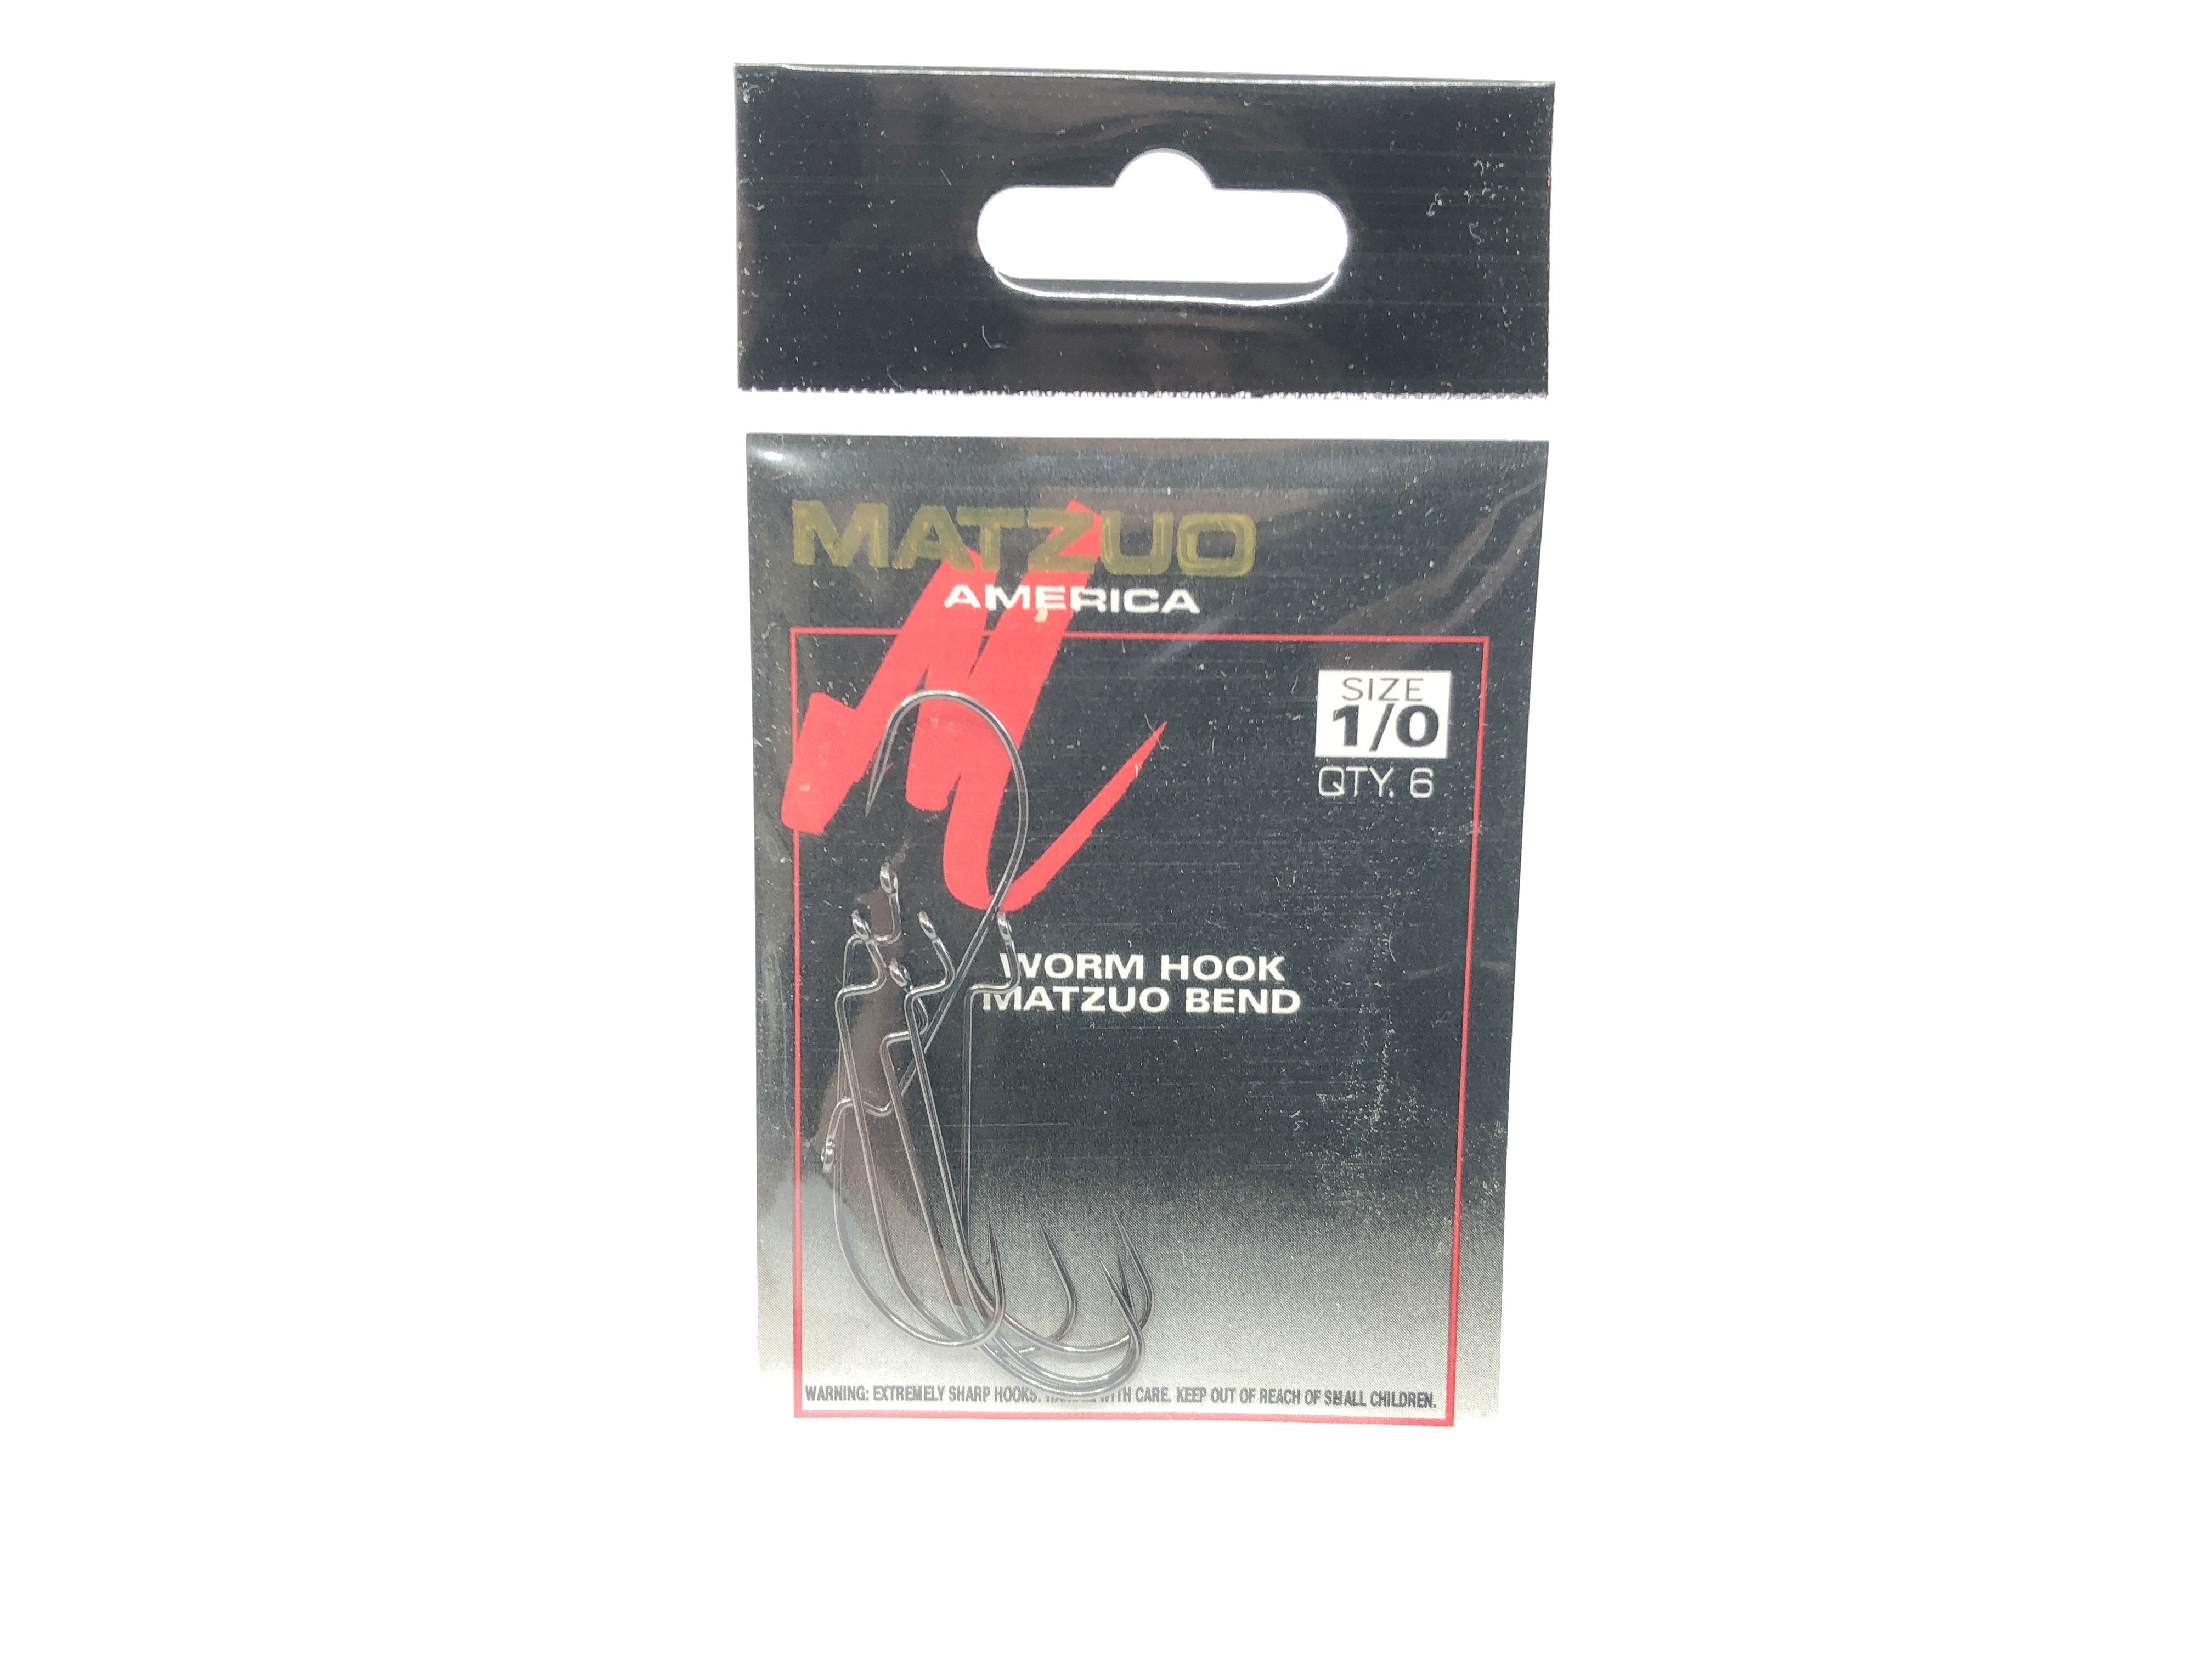 Matzuo America Worm Hook Matzuo Bend Size 1/0 Qty 6 Ref 107011-1/0